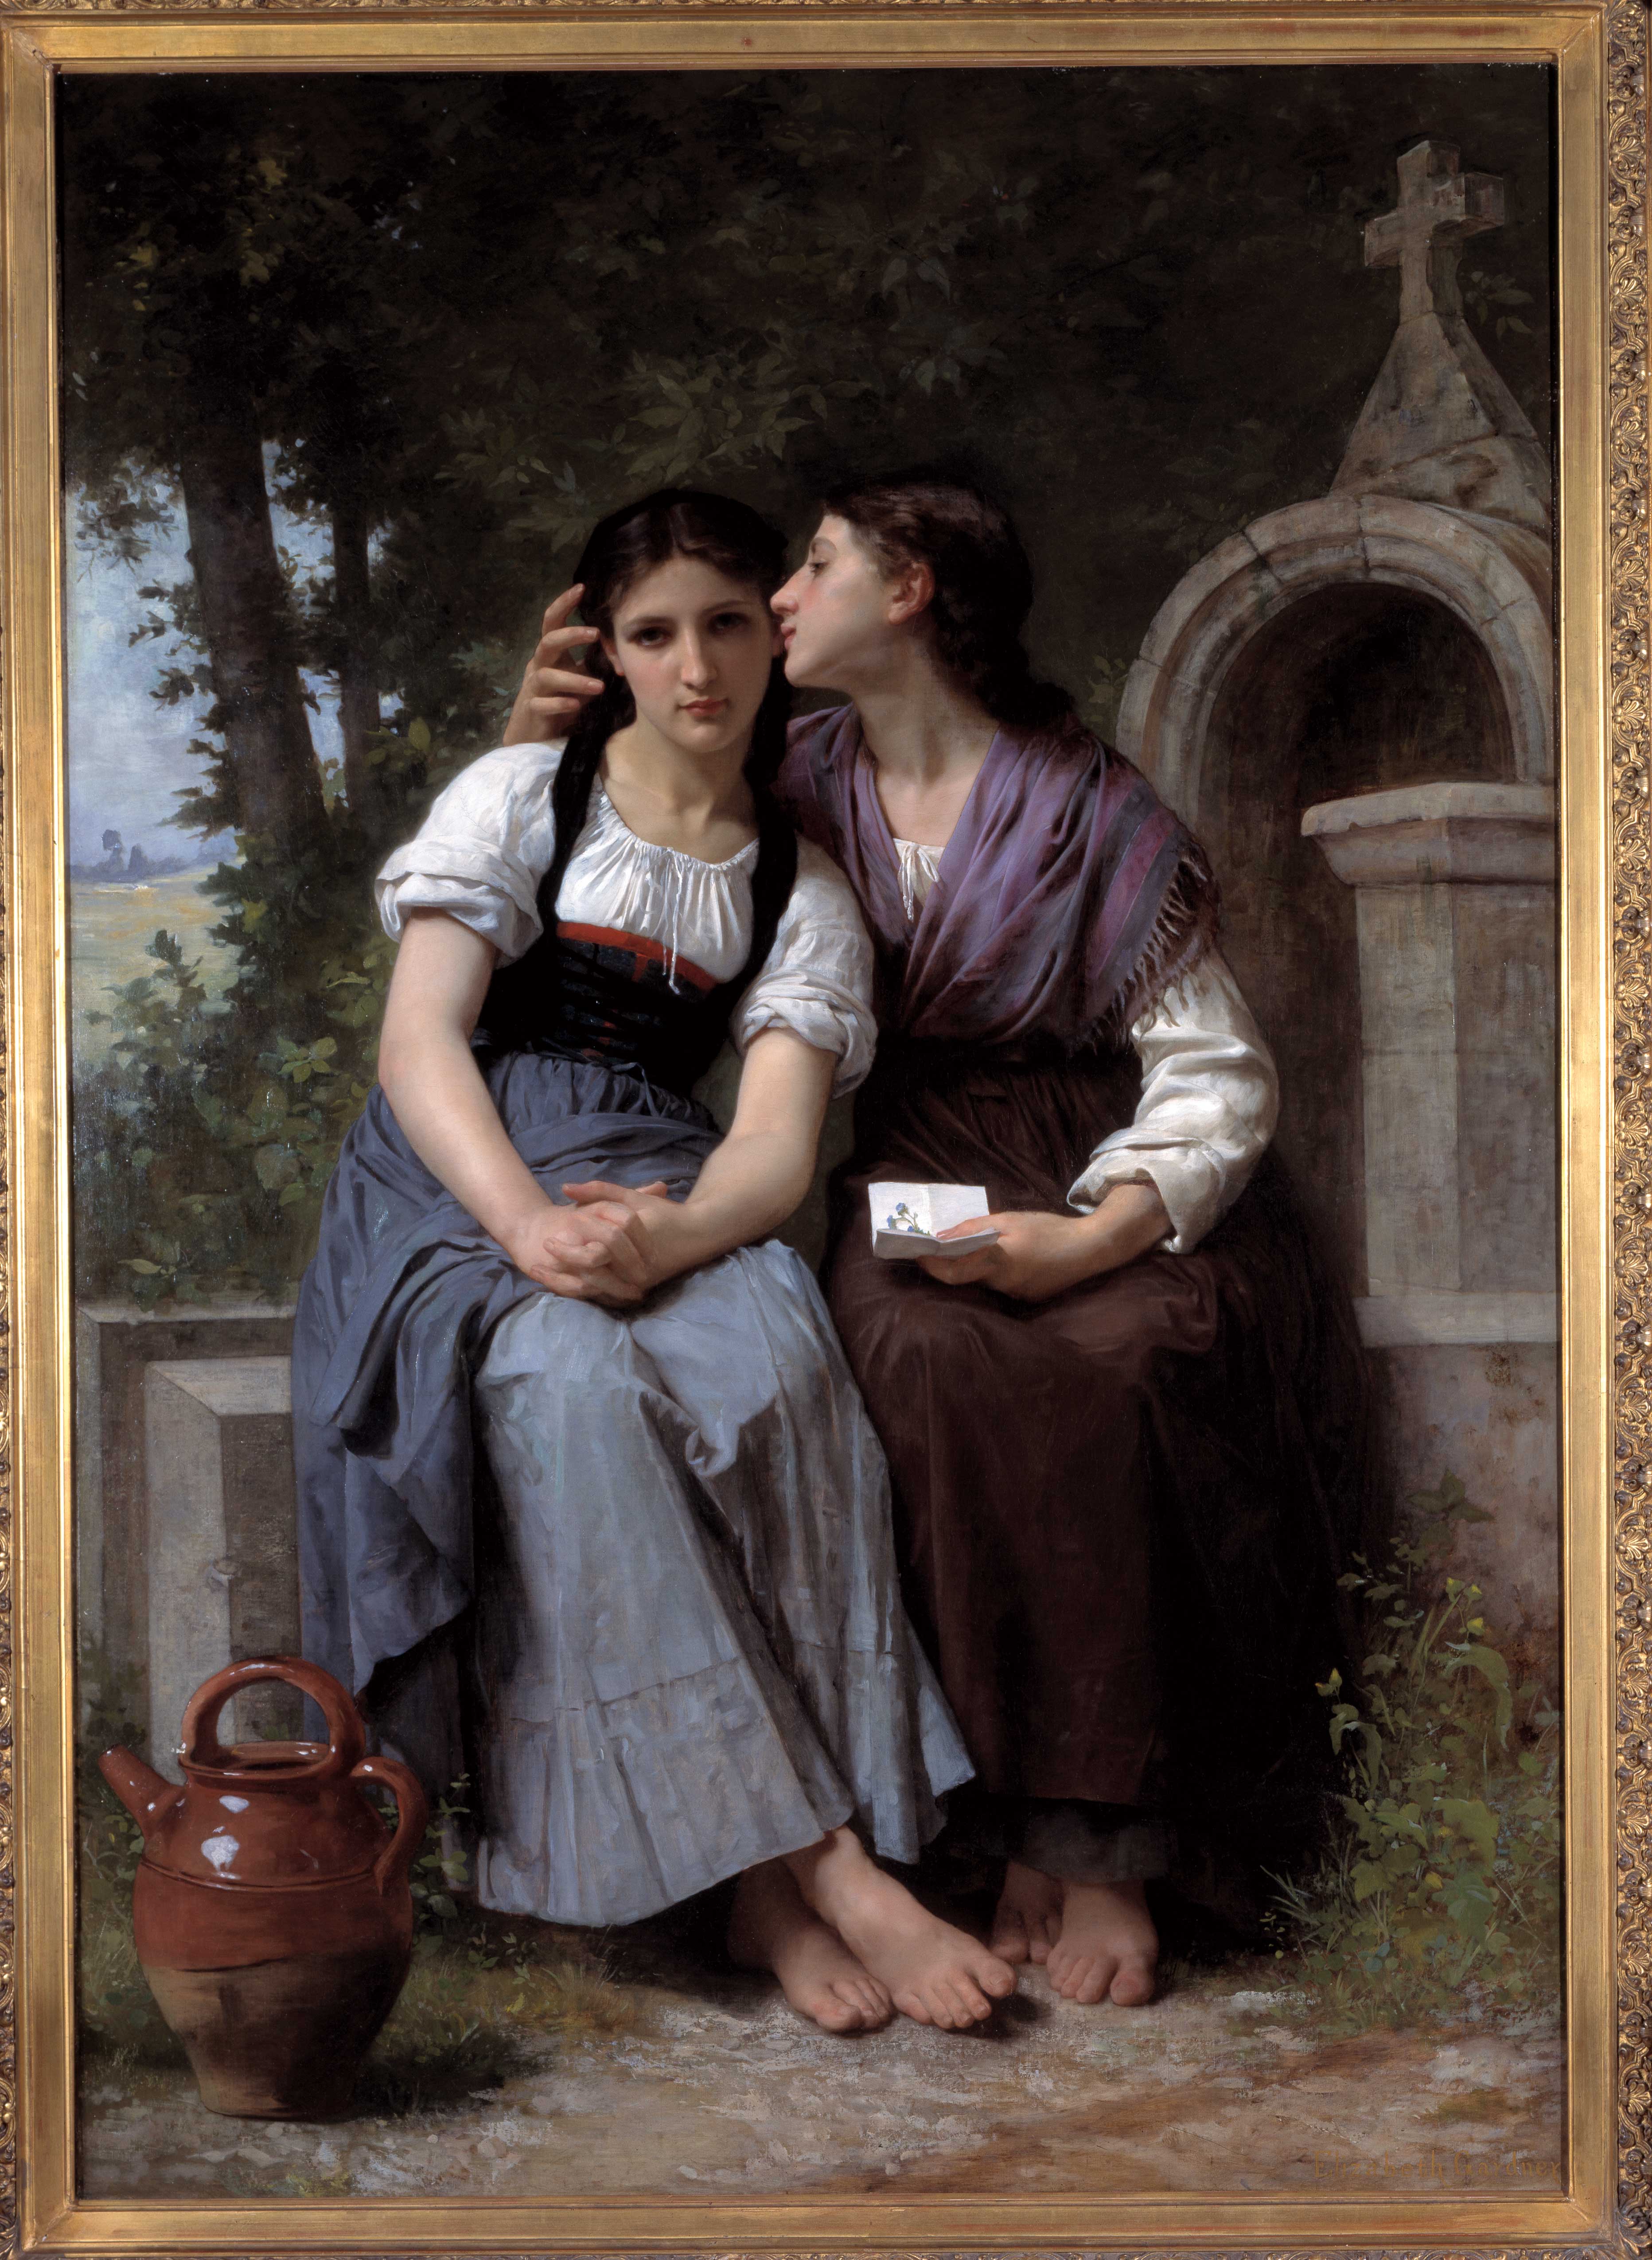 السر by Elizabeth Jane Gardner Bouguereau - حوالي 1880 م - ٤ر١٢١ في ٧ر١٧٢ سم 